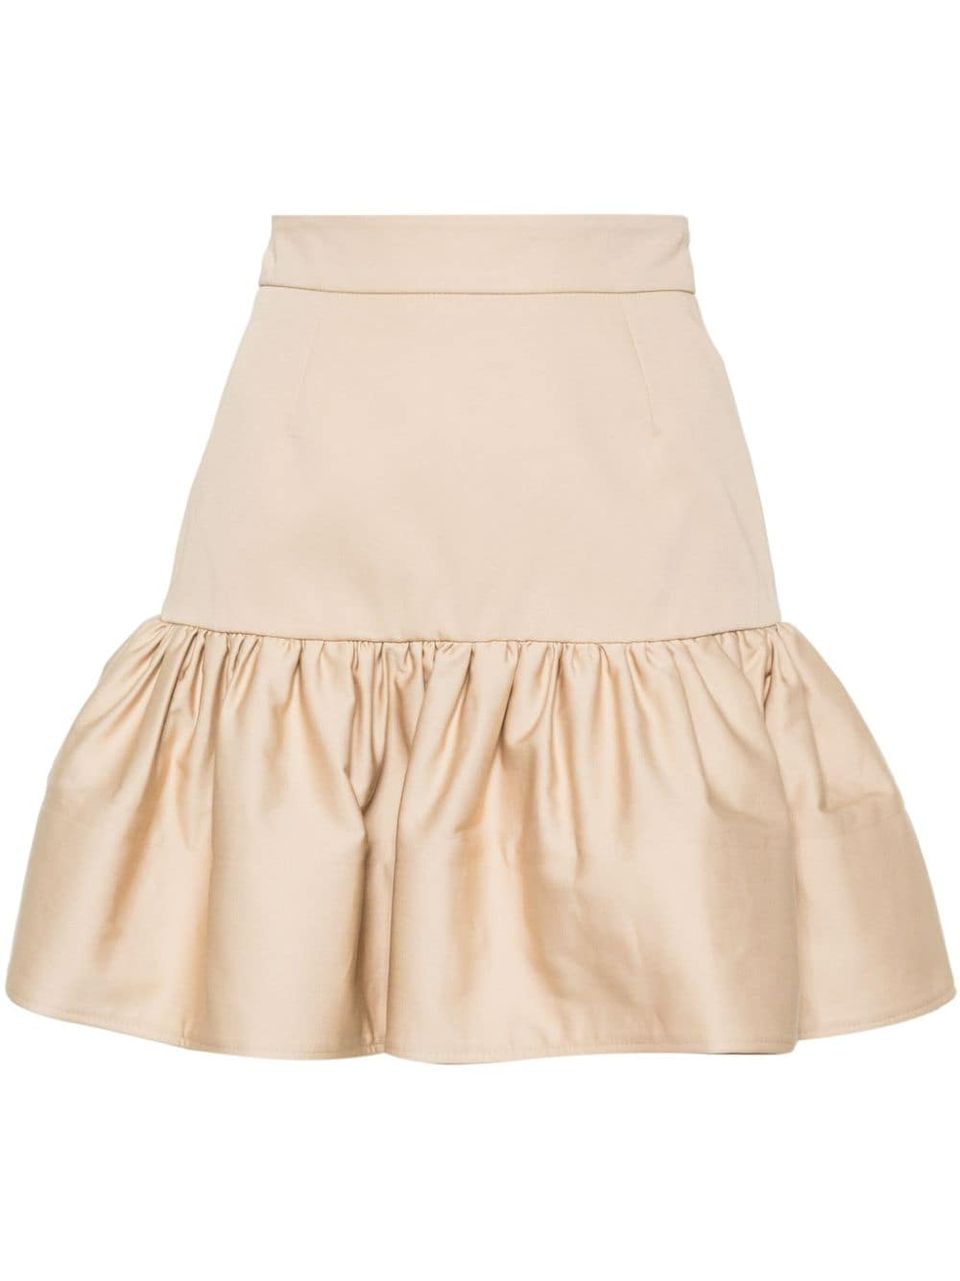 Skirt with flounces